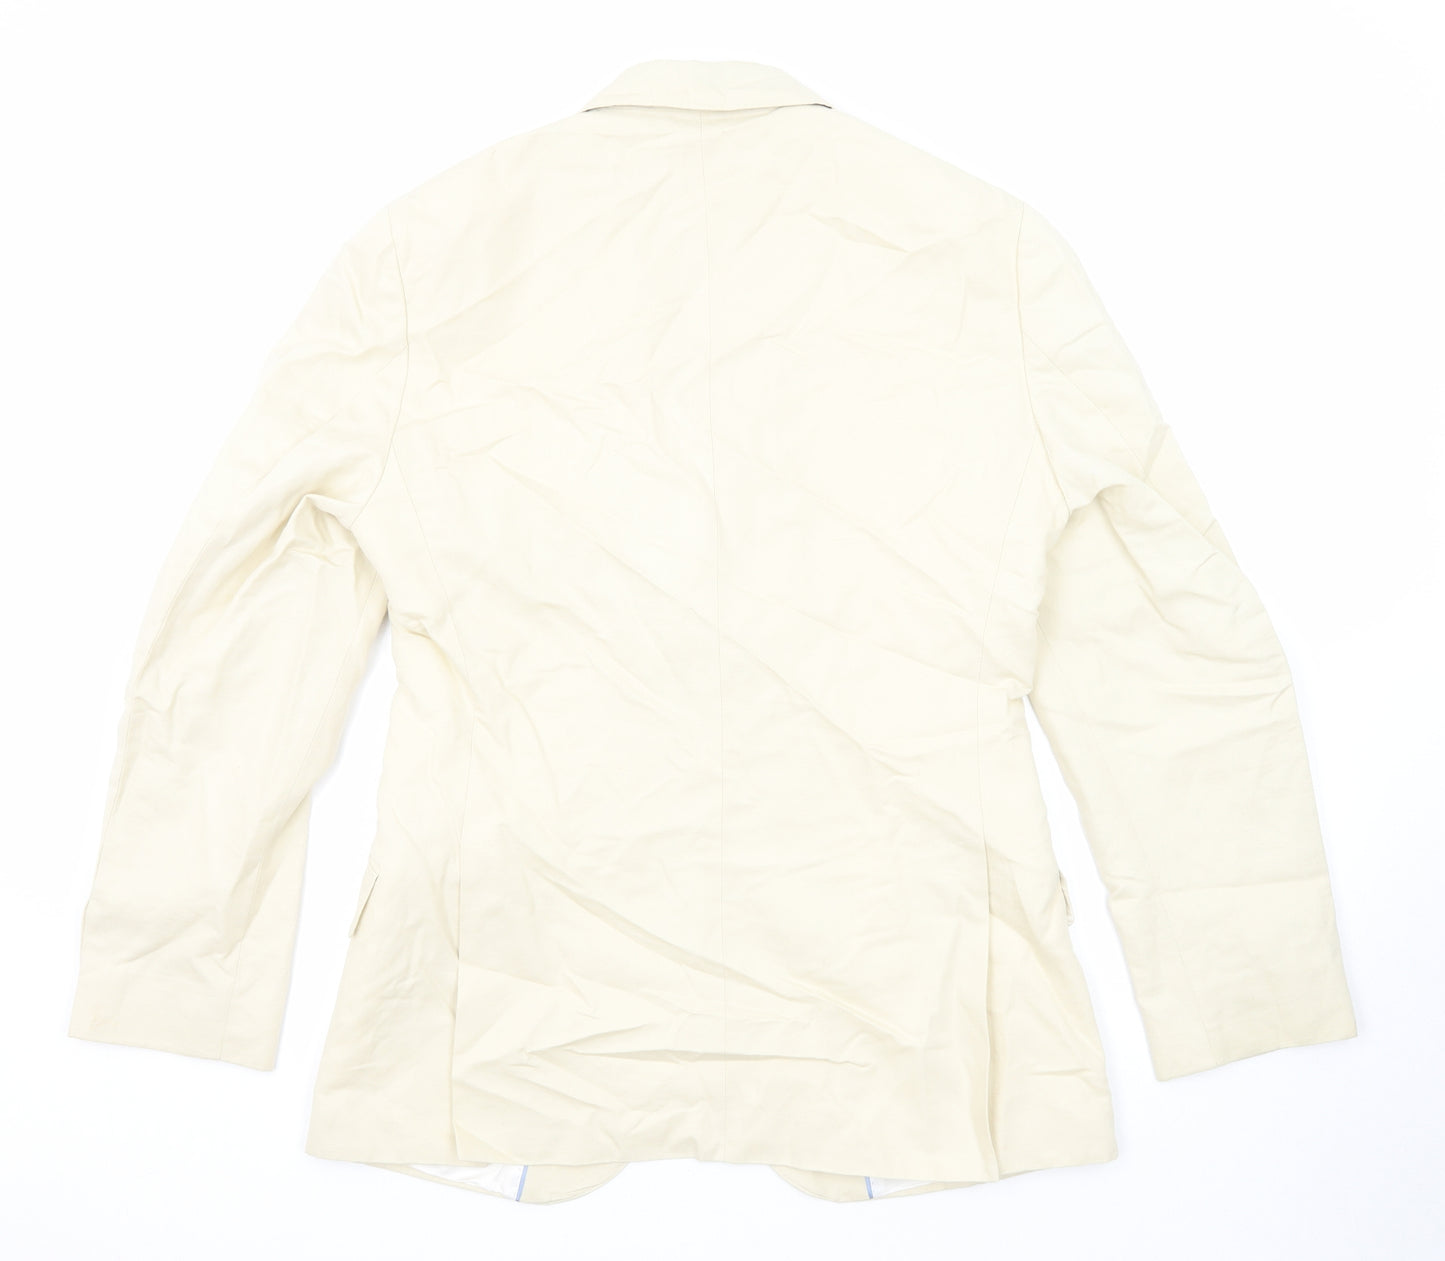 Crew Clothing Mens Ivory Cotton Jacket Suit Jacket Size 38 Regular